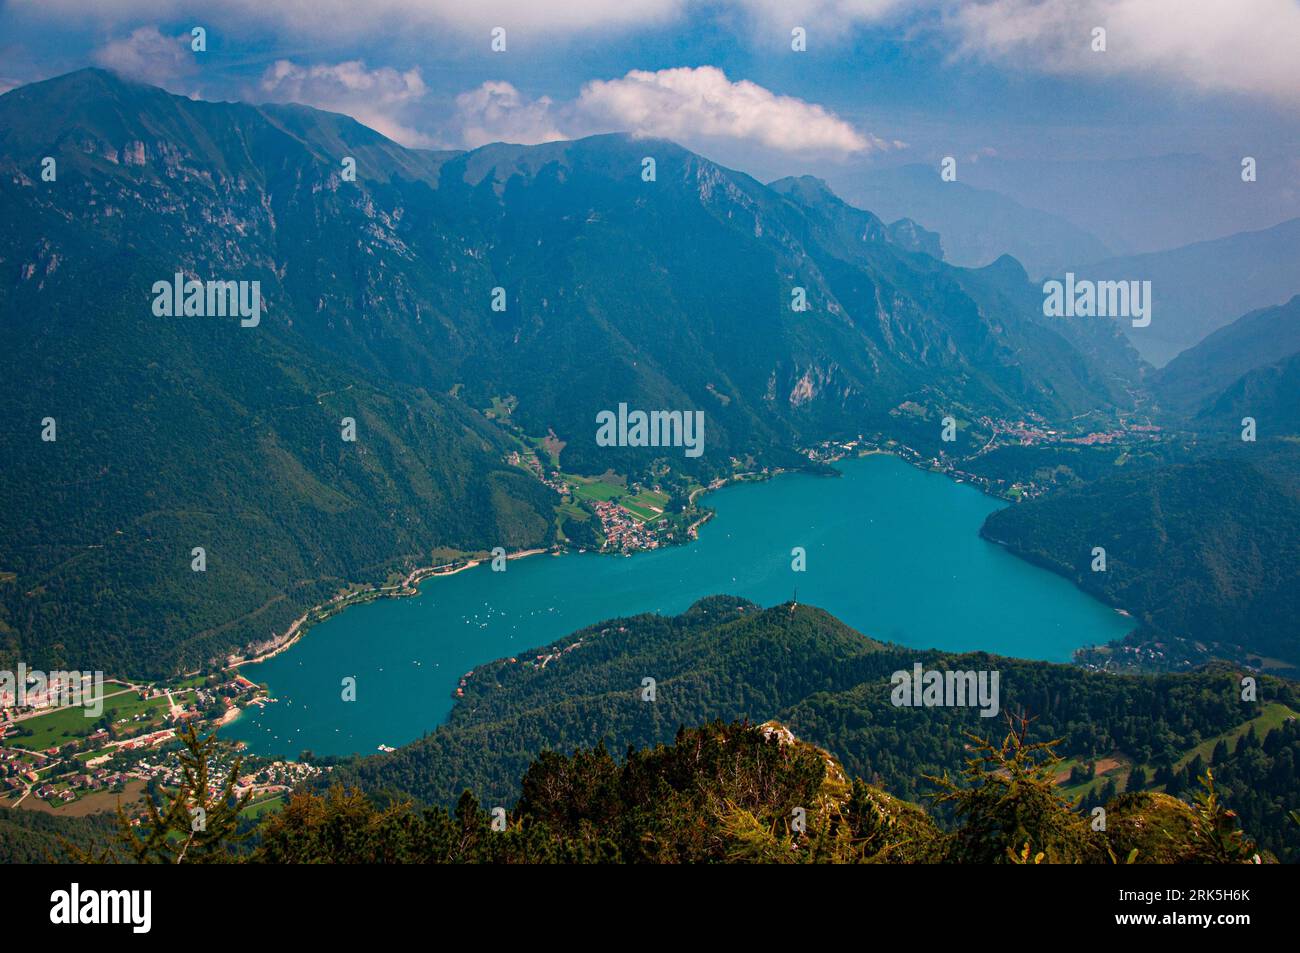 Régate sur le Lago di Ledro dans le nord de l'Italie vue du sommet d'une montagne Banque D'Images